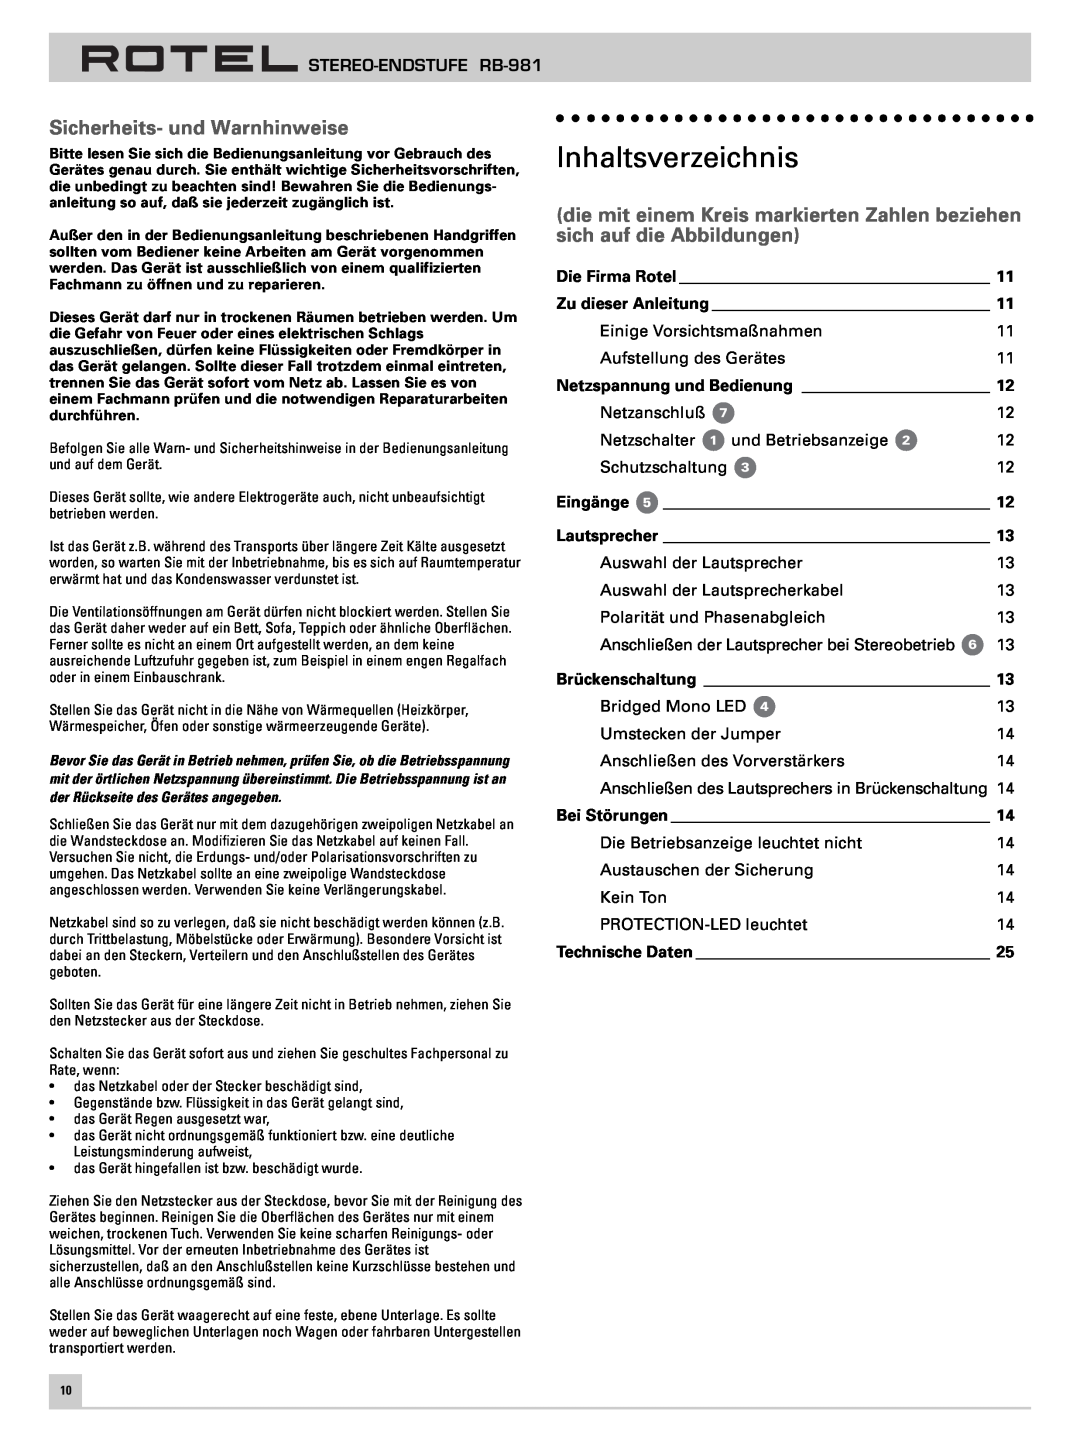 Rotel RB-981 owner manual Inhaltsverzeichnis, Sicherheits- und Warnhinweise 